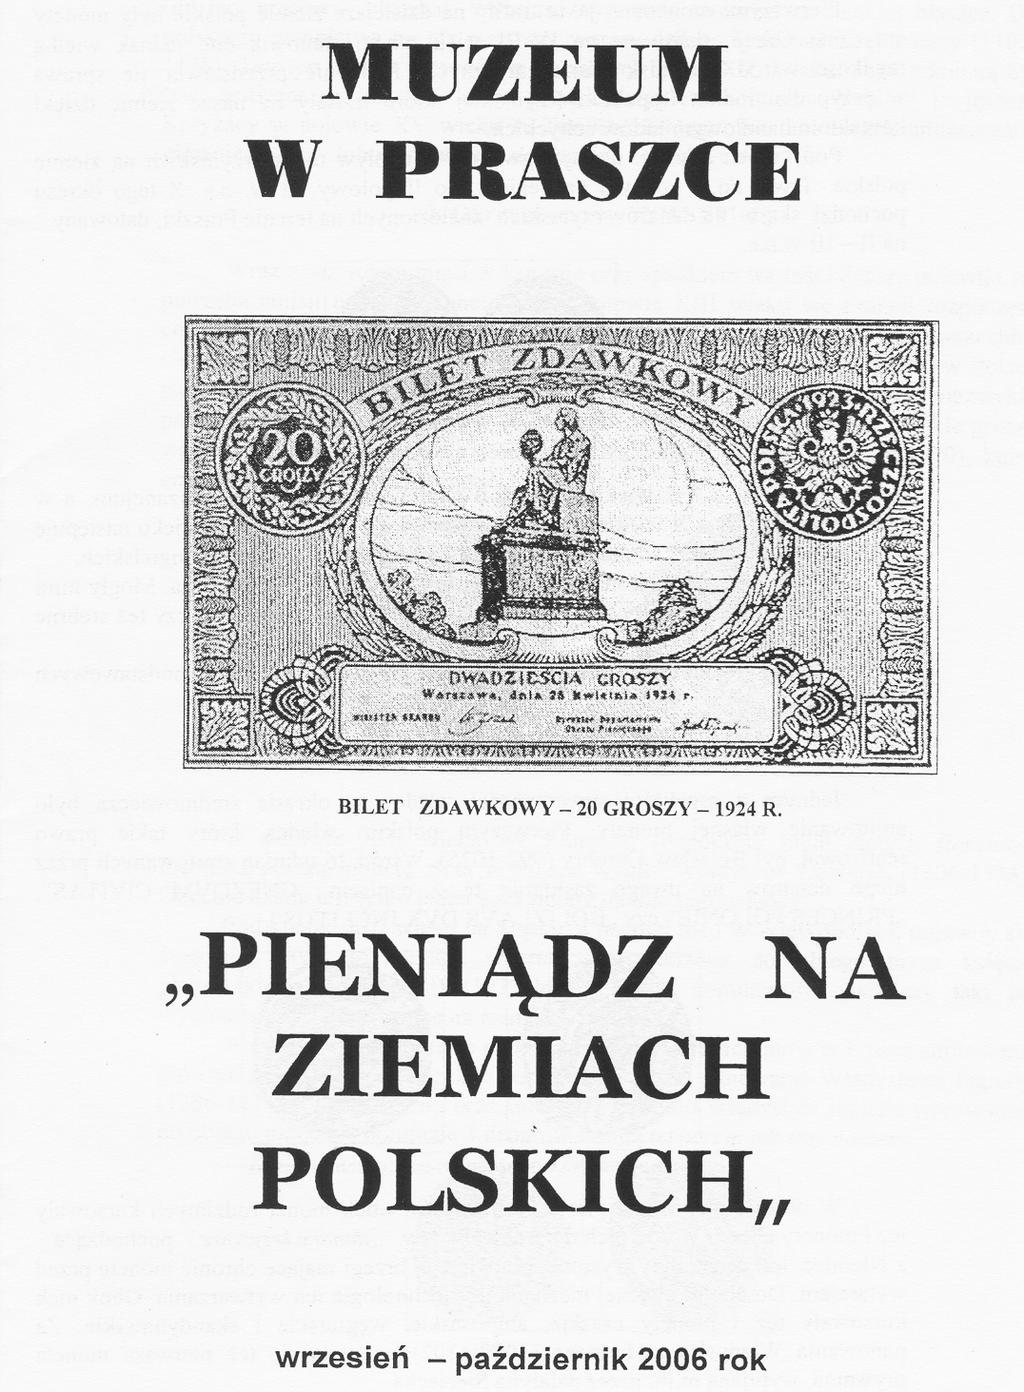 25 Spotkanie w Praszce zgromadziło przeszło 60 uczestników, autorów artykułów, not, notatek oraz redaktorów pism numizmatycznych z całego Kraju.